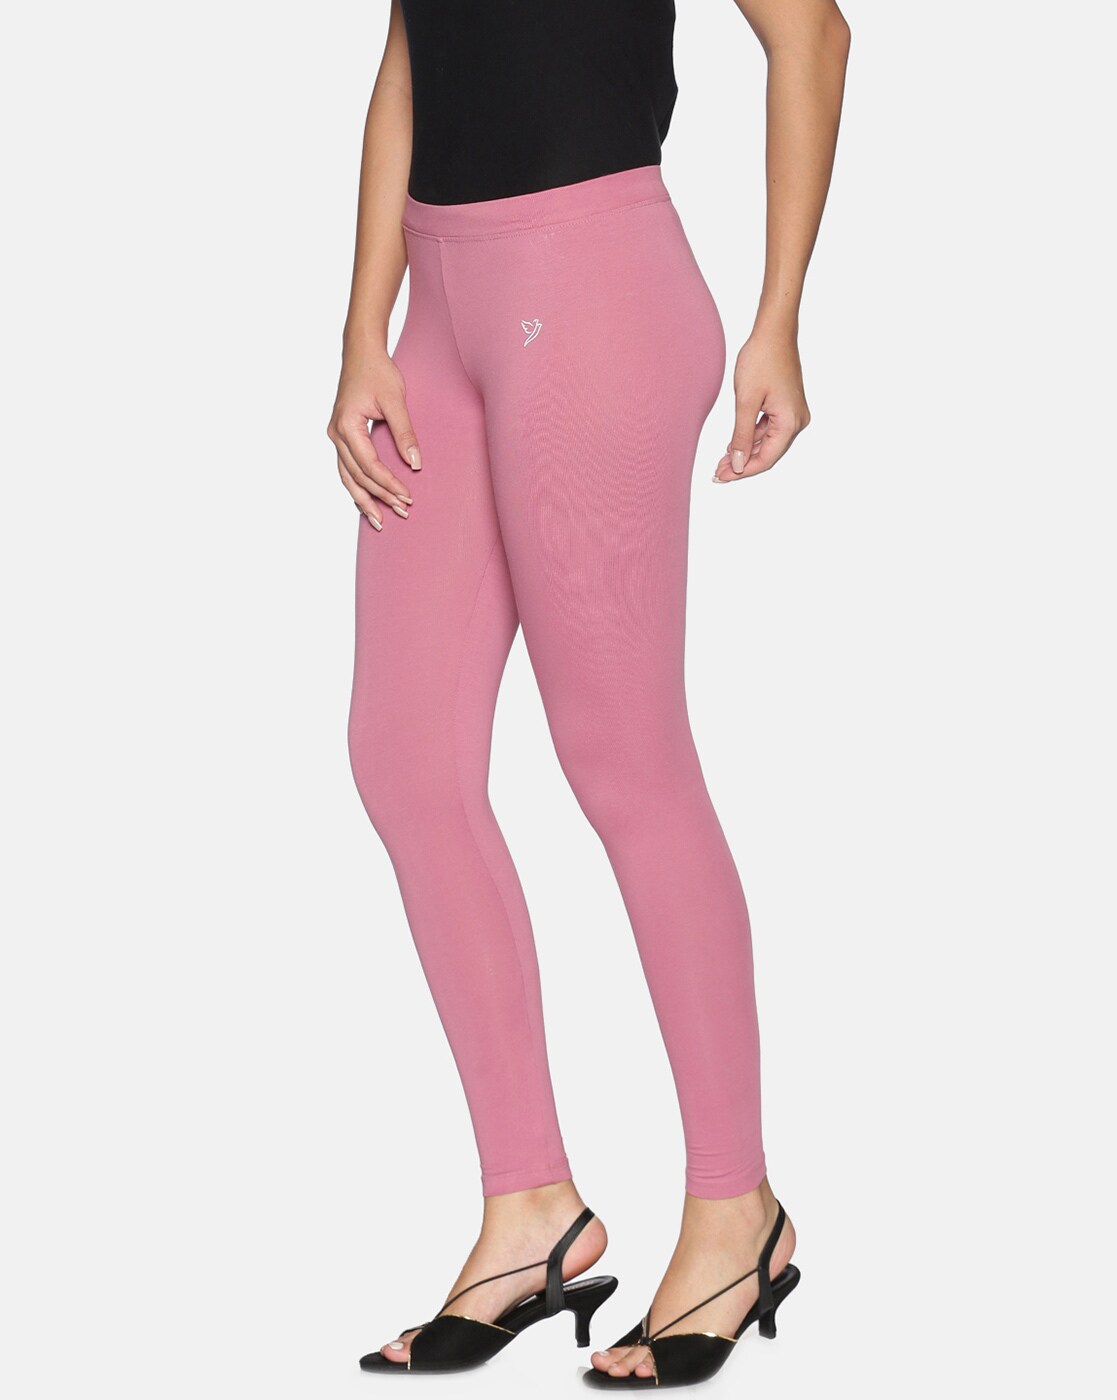 Buy Dark Pink Leggings for Women by Twin Birds Online